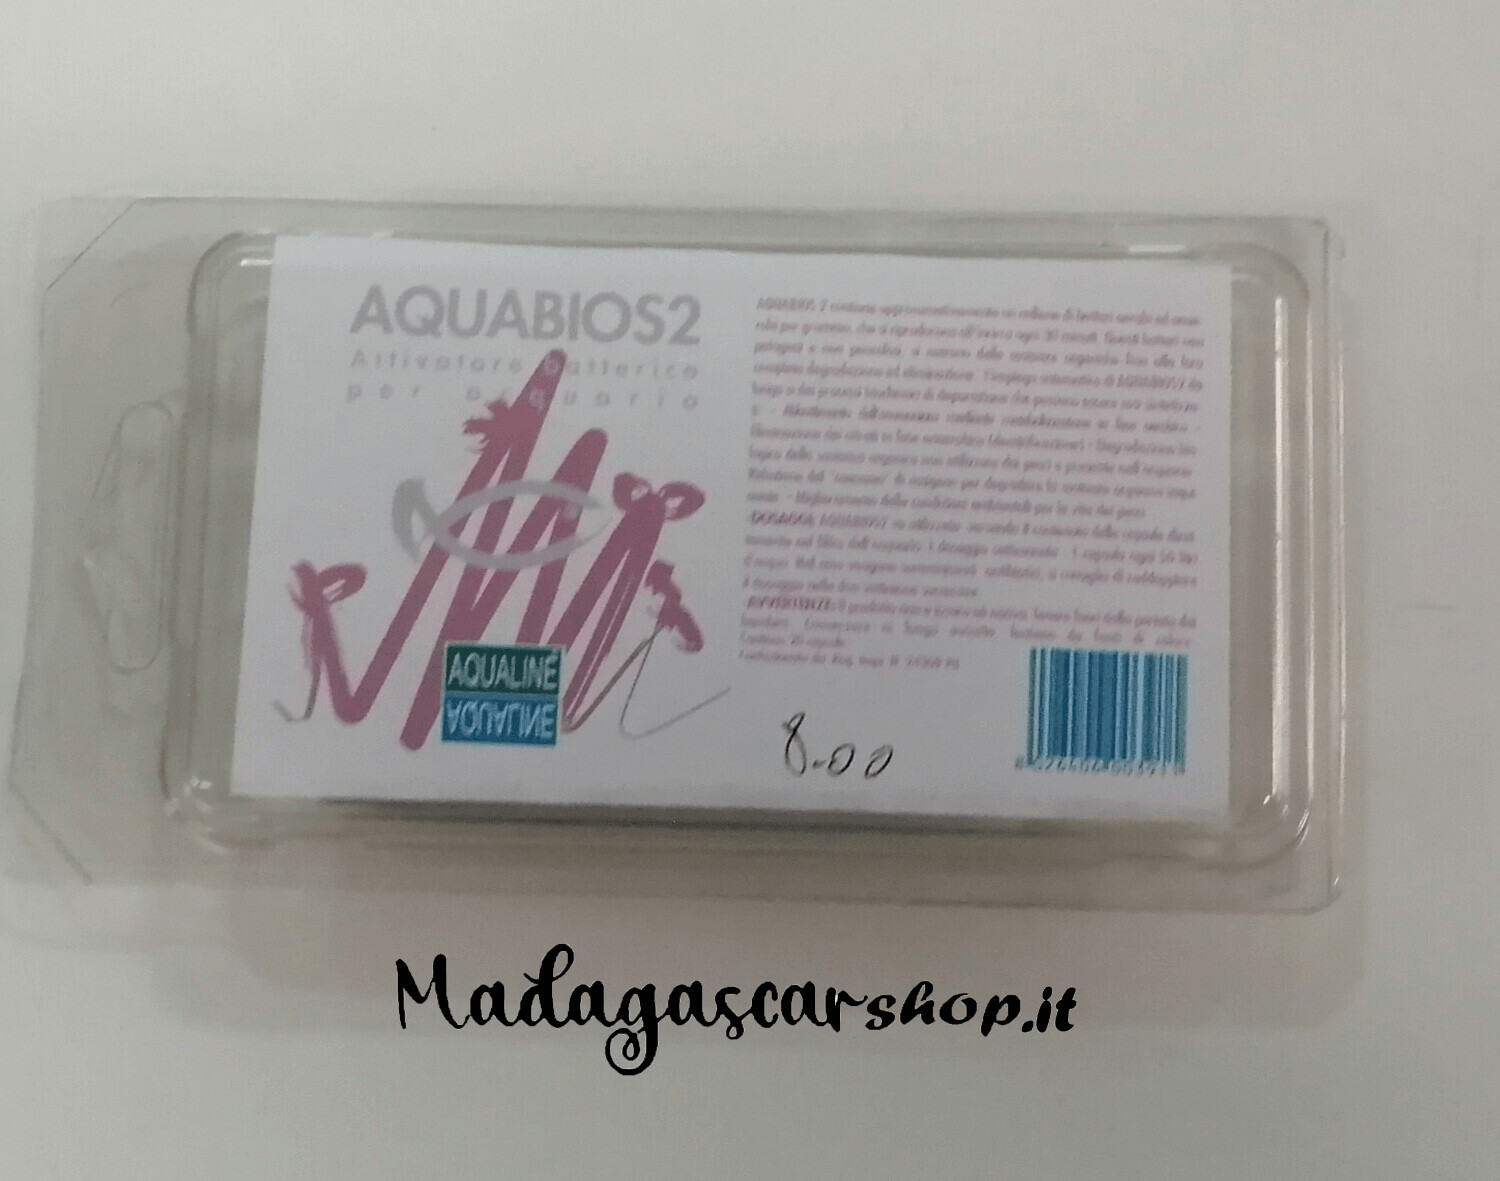 Aqualine - Aquabios2 Attivatore Batterico per Acquario